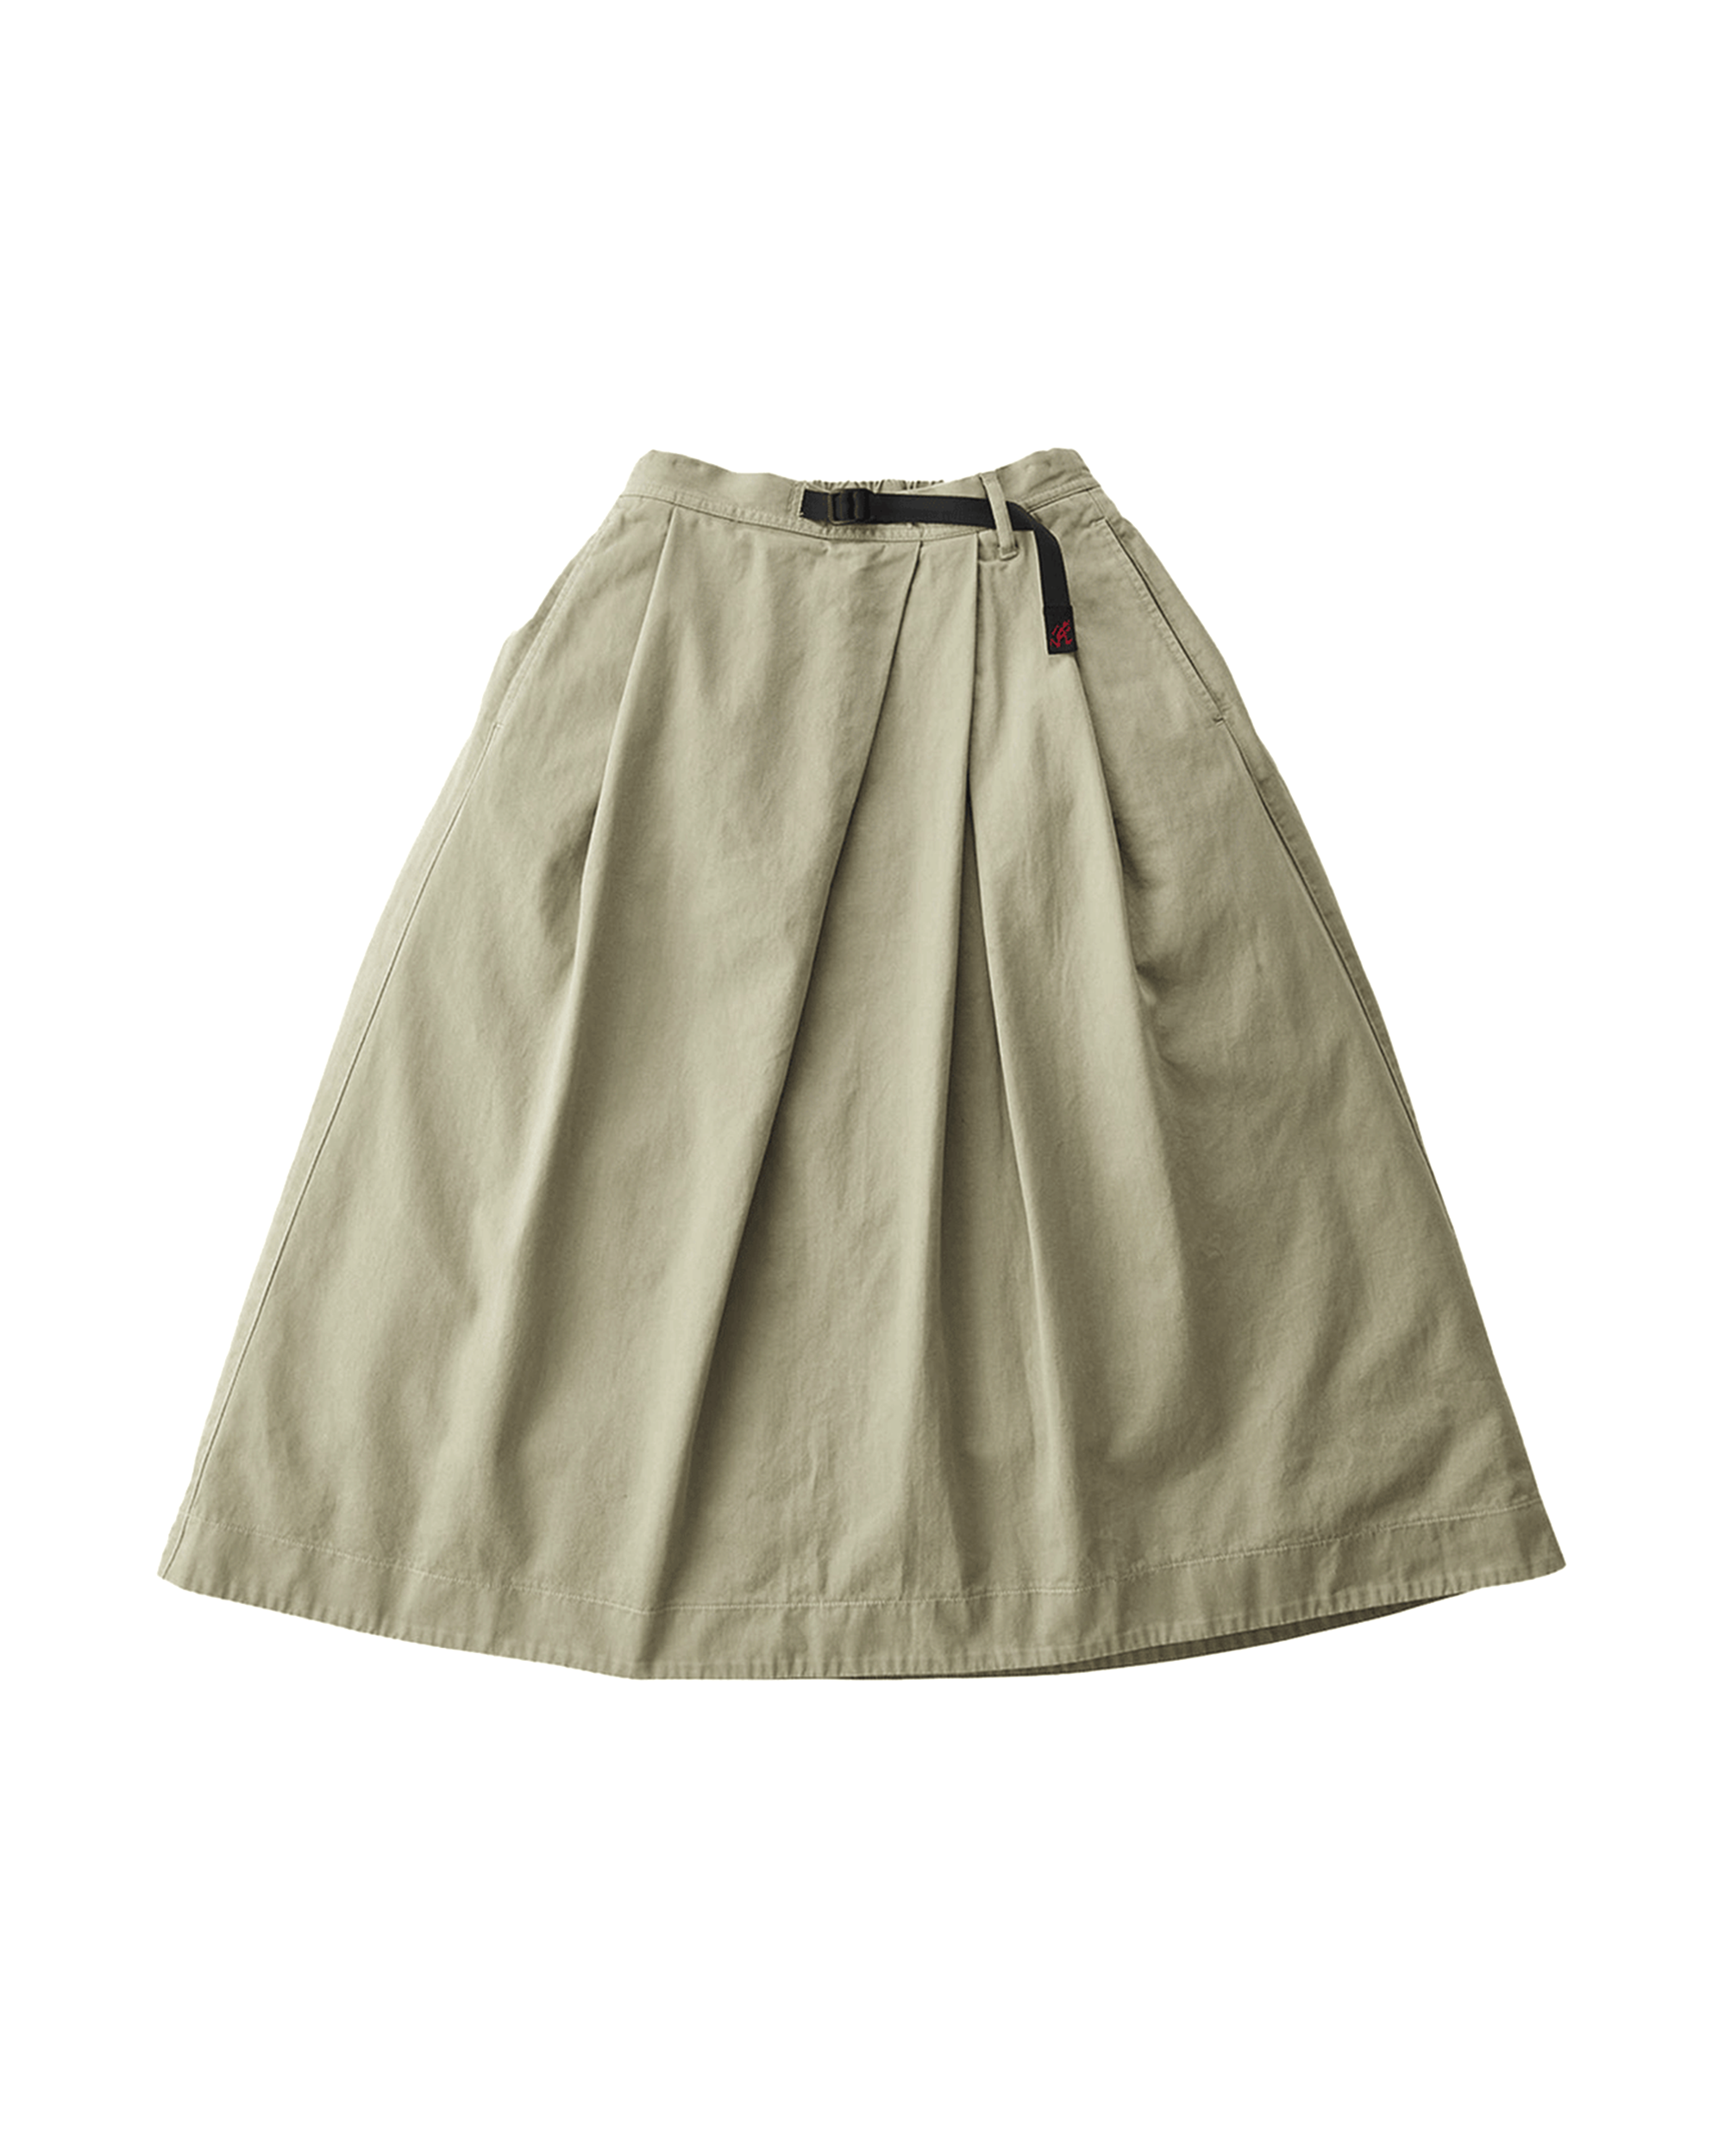 Talecut Skirt - Dusty Khaki